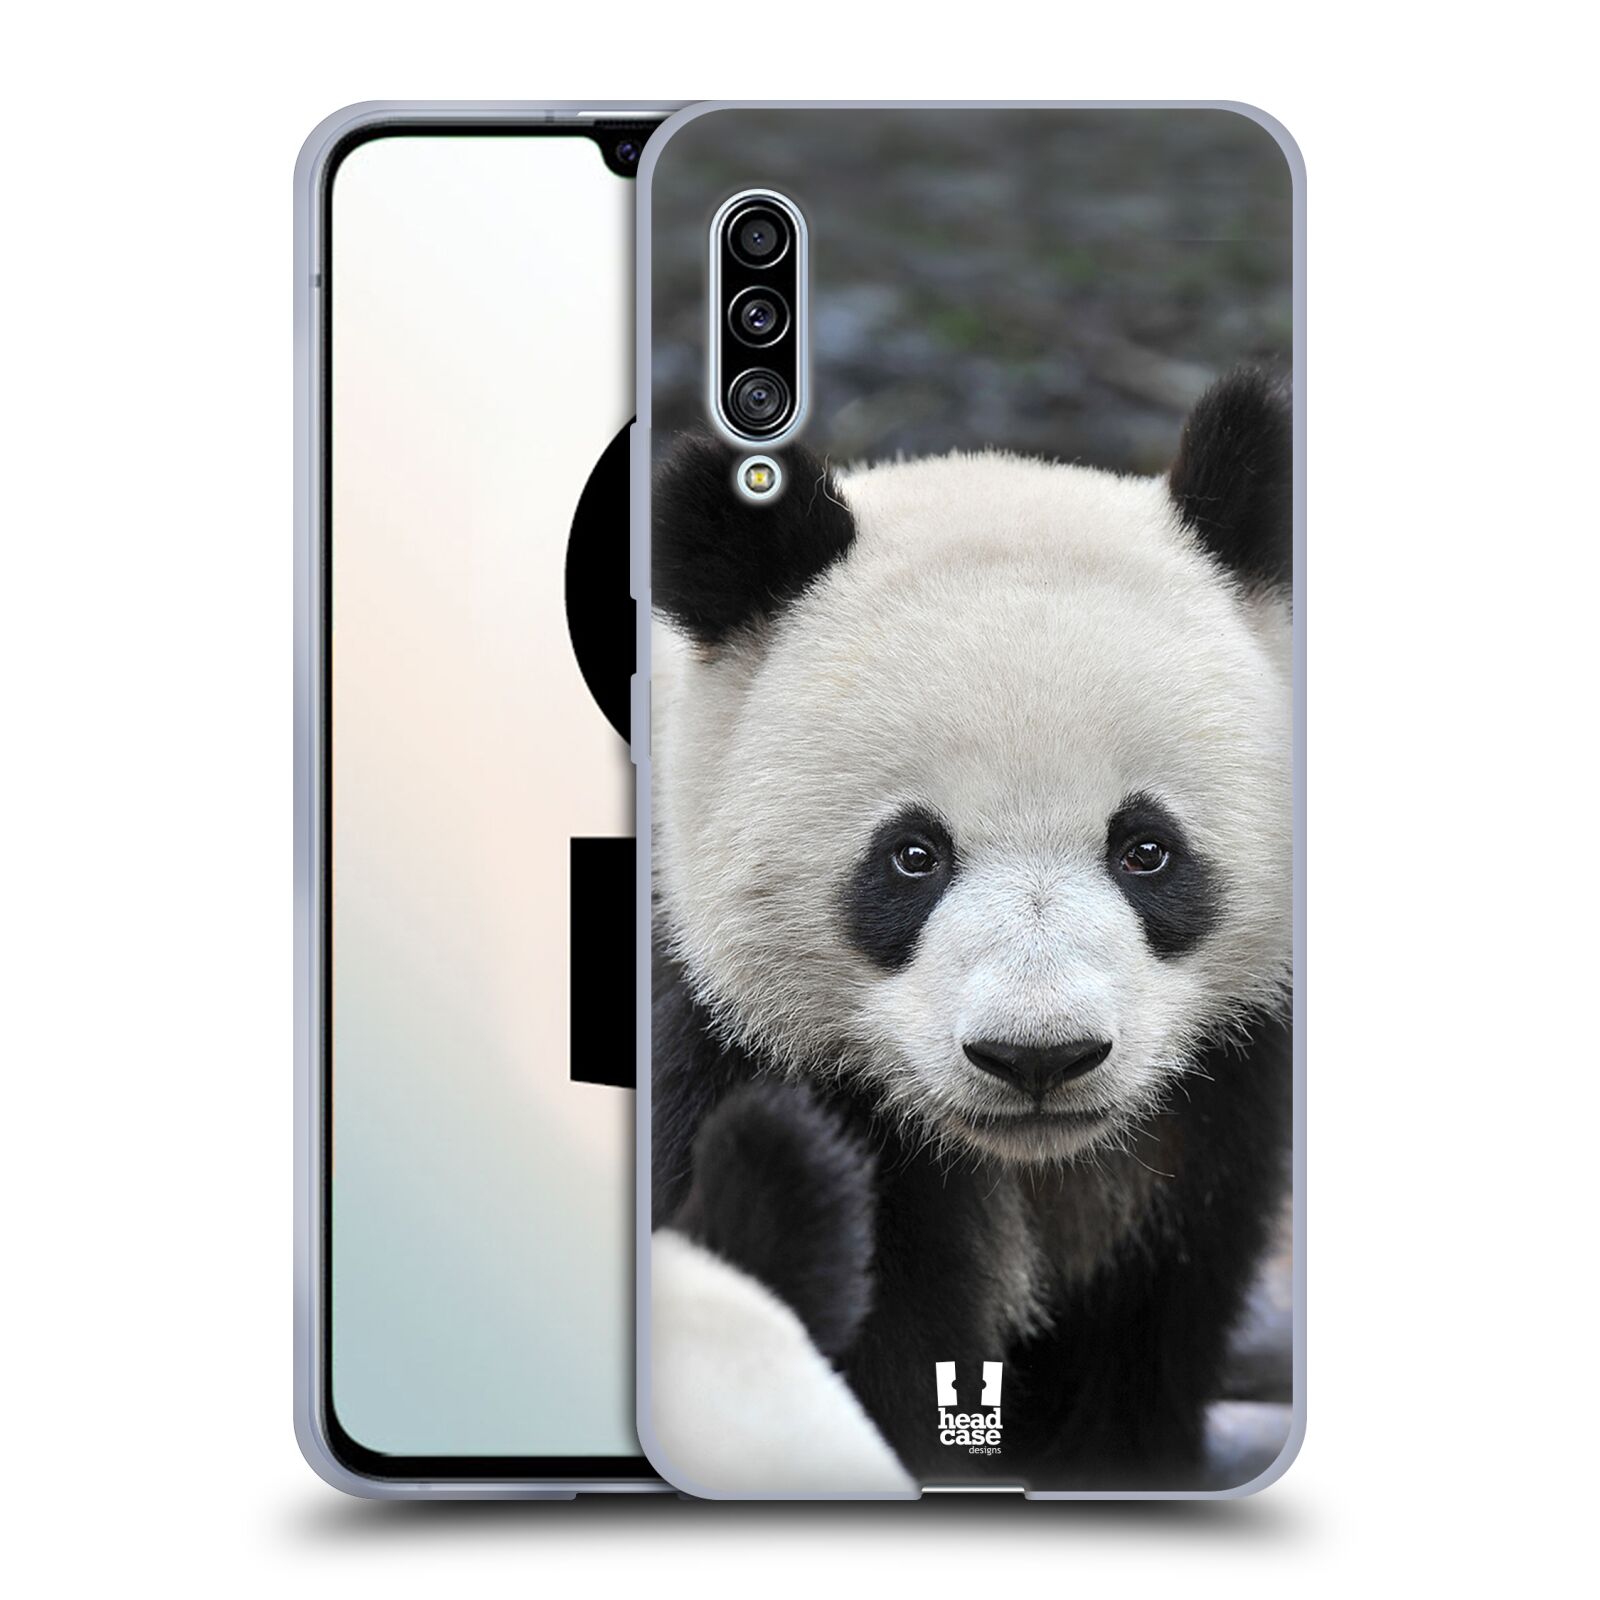 Plastový obal HEAD CASE na mobil Samsung Galaxy A90 5G vzor Divočina, Divoký život a zvířata foto MEDVĚD PANDA